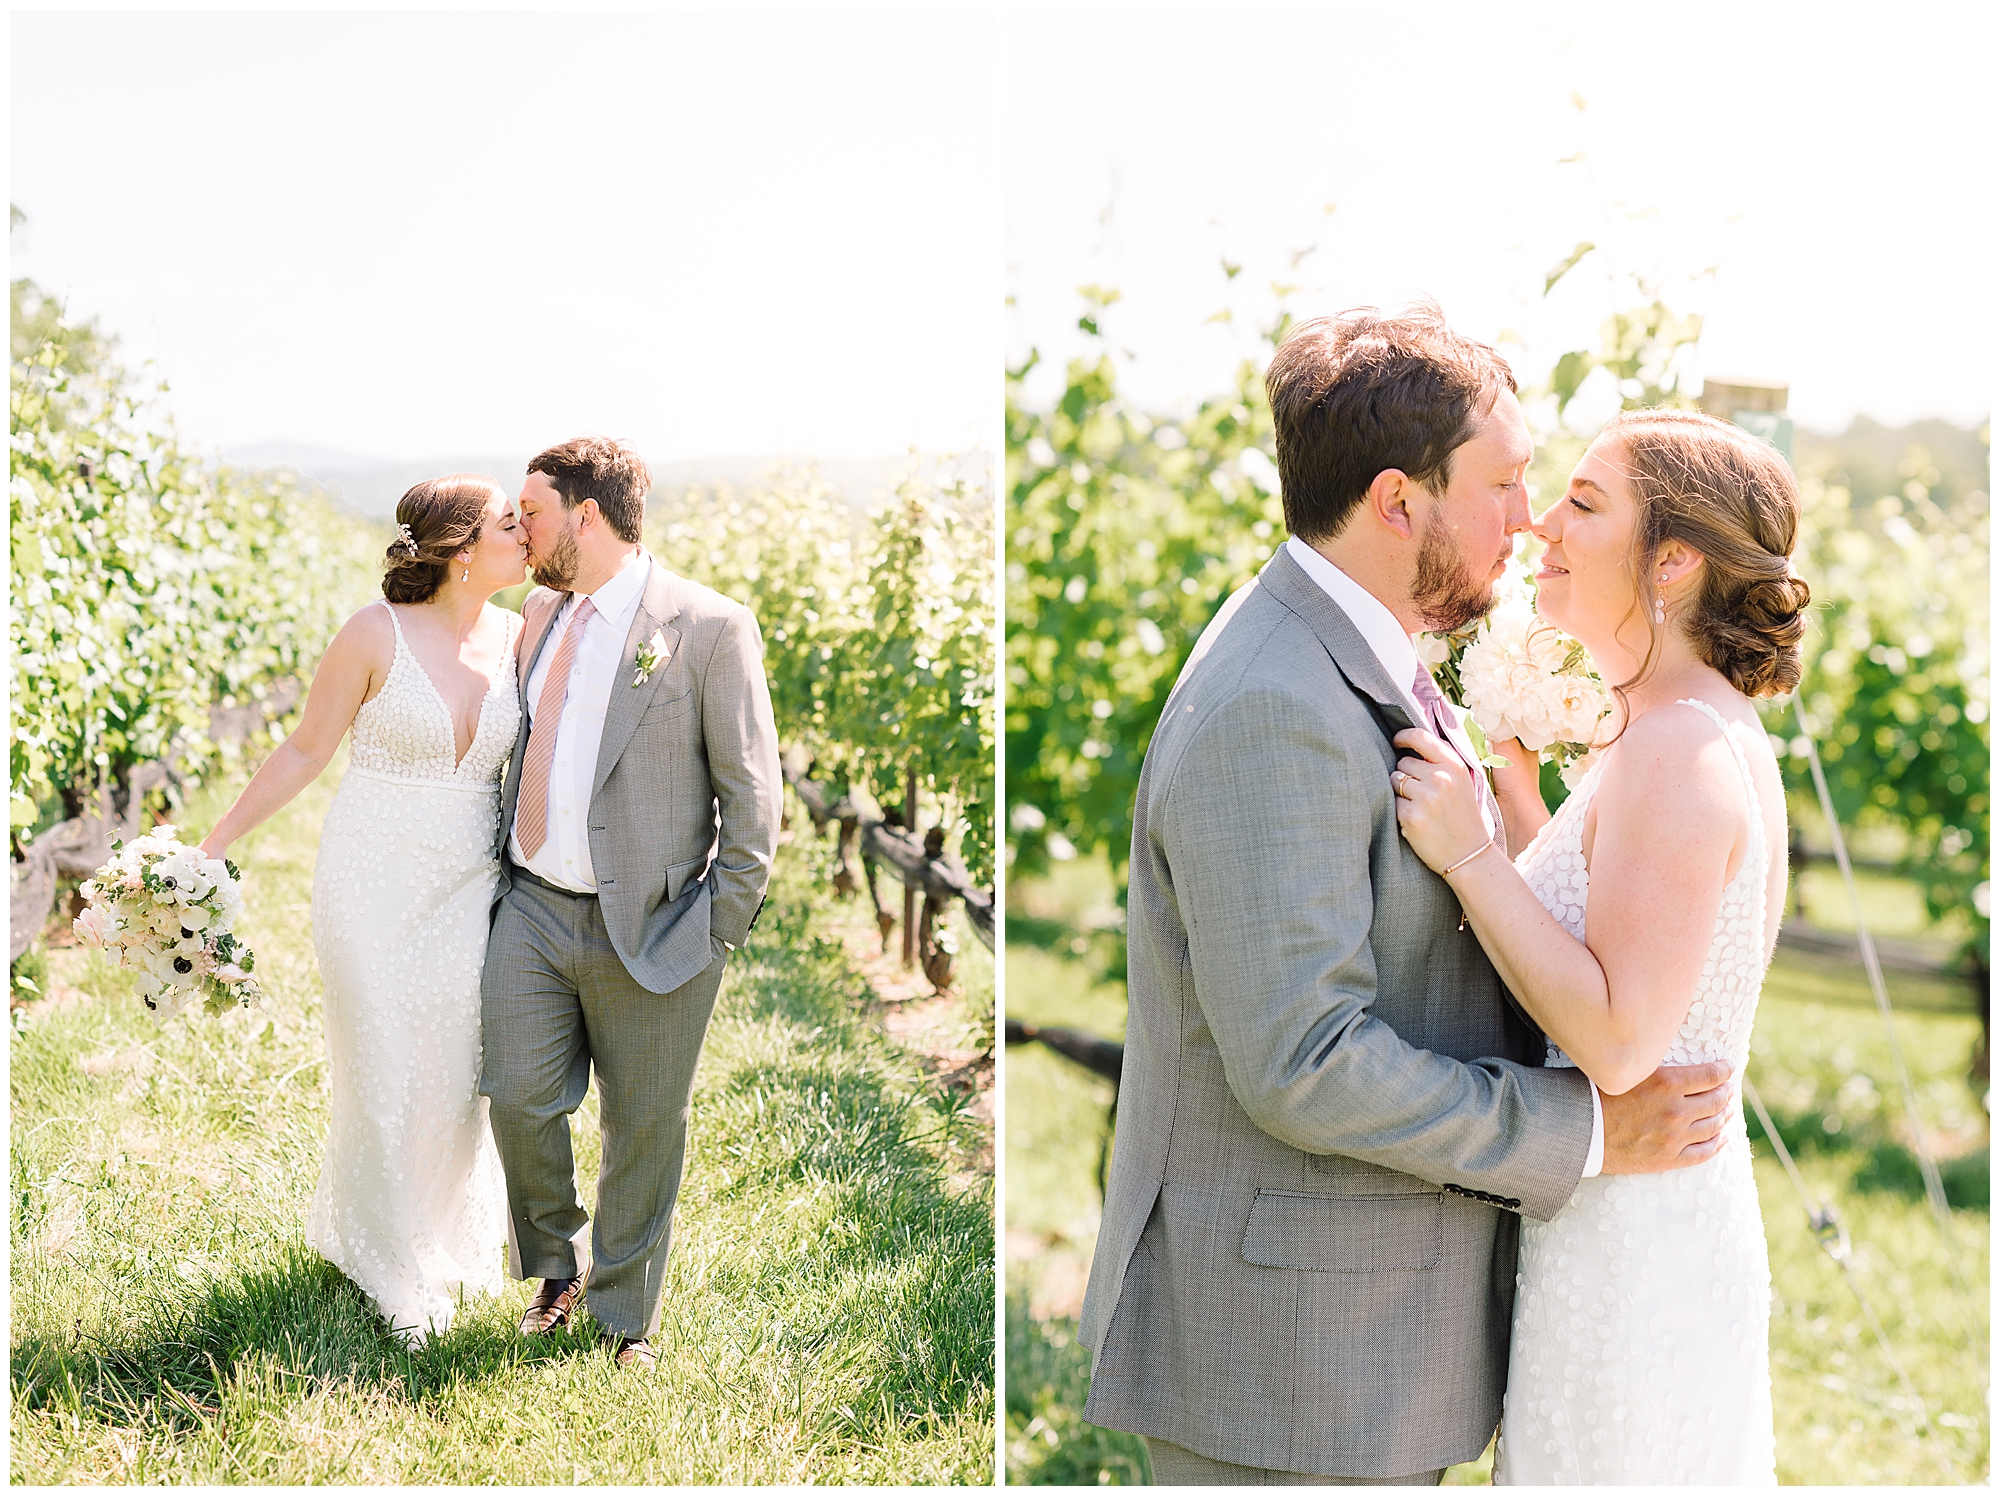 KrystaNormanPhoto_Summer_Stone_Tower_Winery Wedding_Leesburg_Virginia_Photographer_Krysta_Norman_0043.jpg